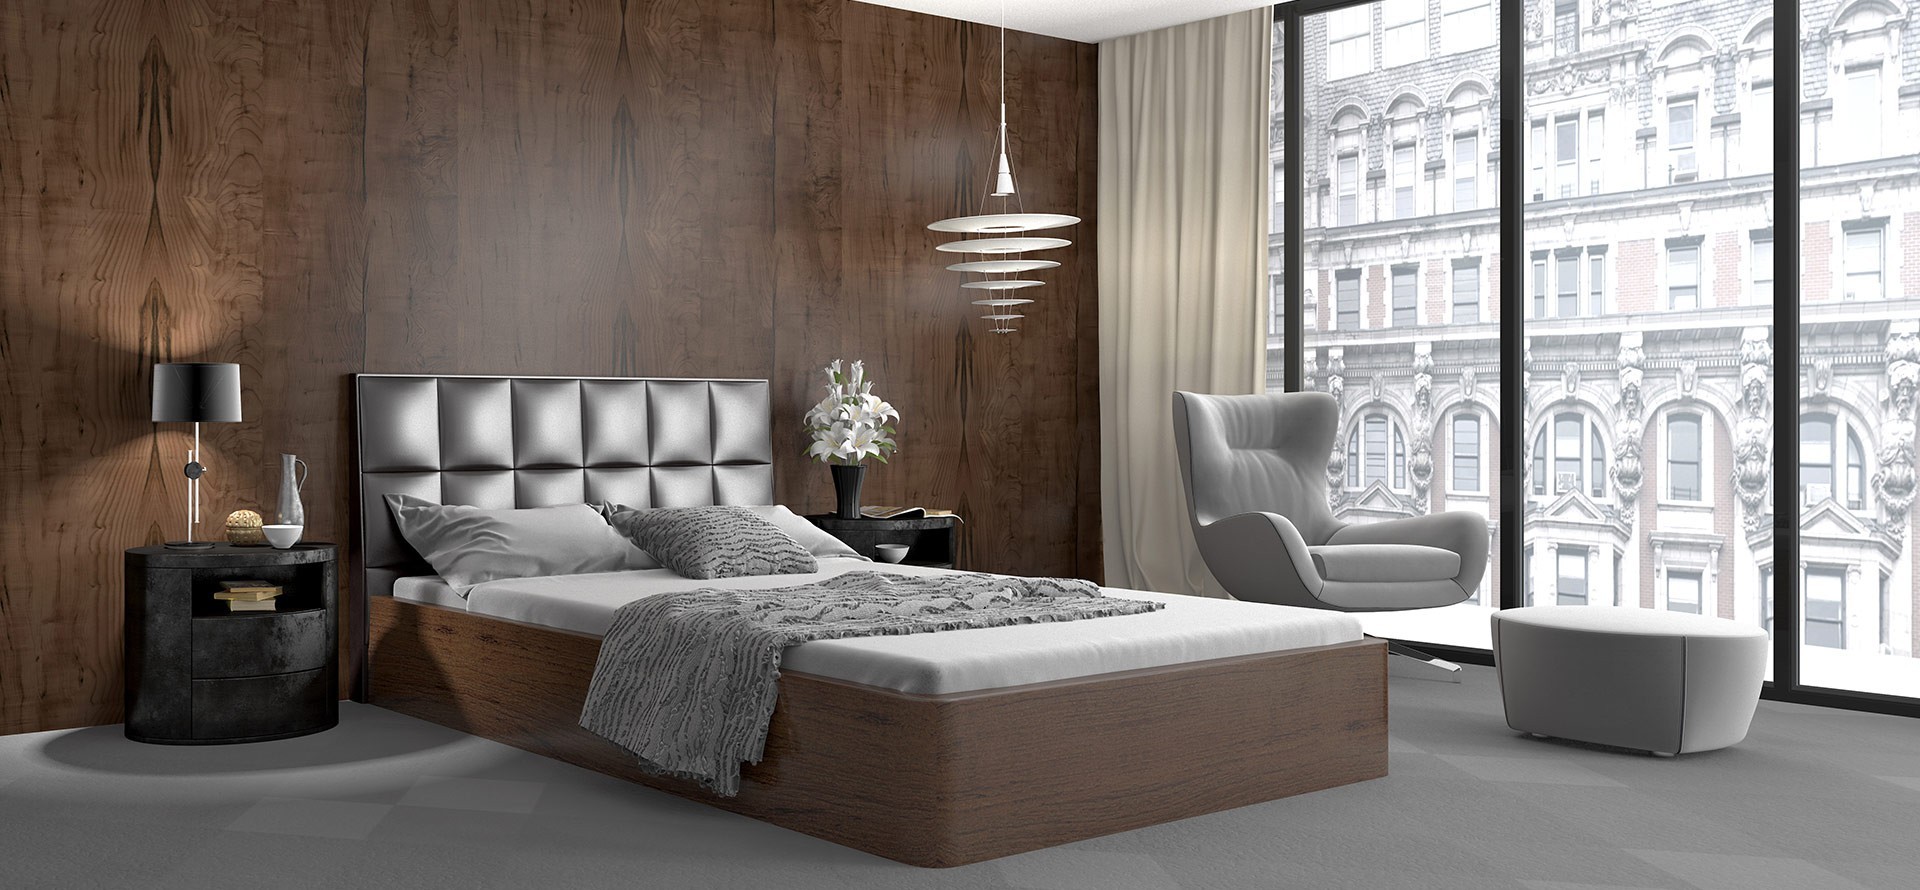 Schlafzimmer mit Wandverkleidung aus Holz